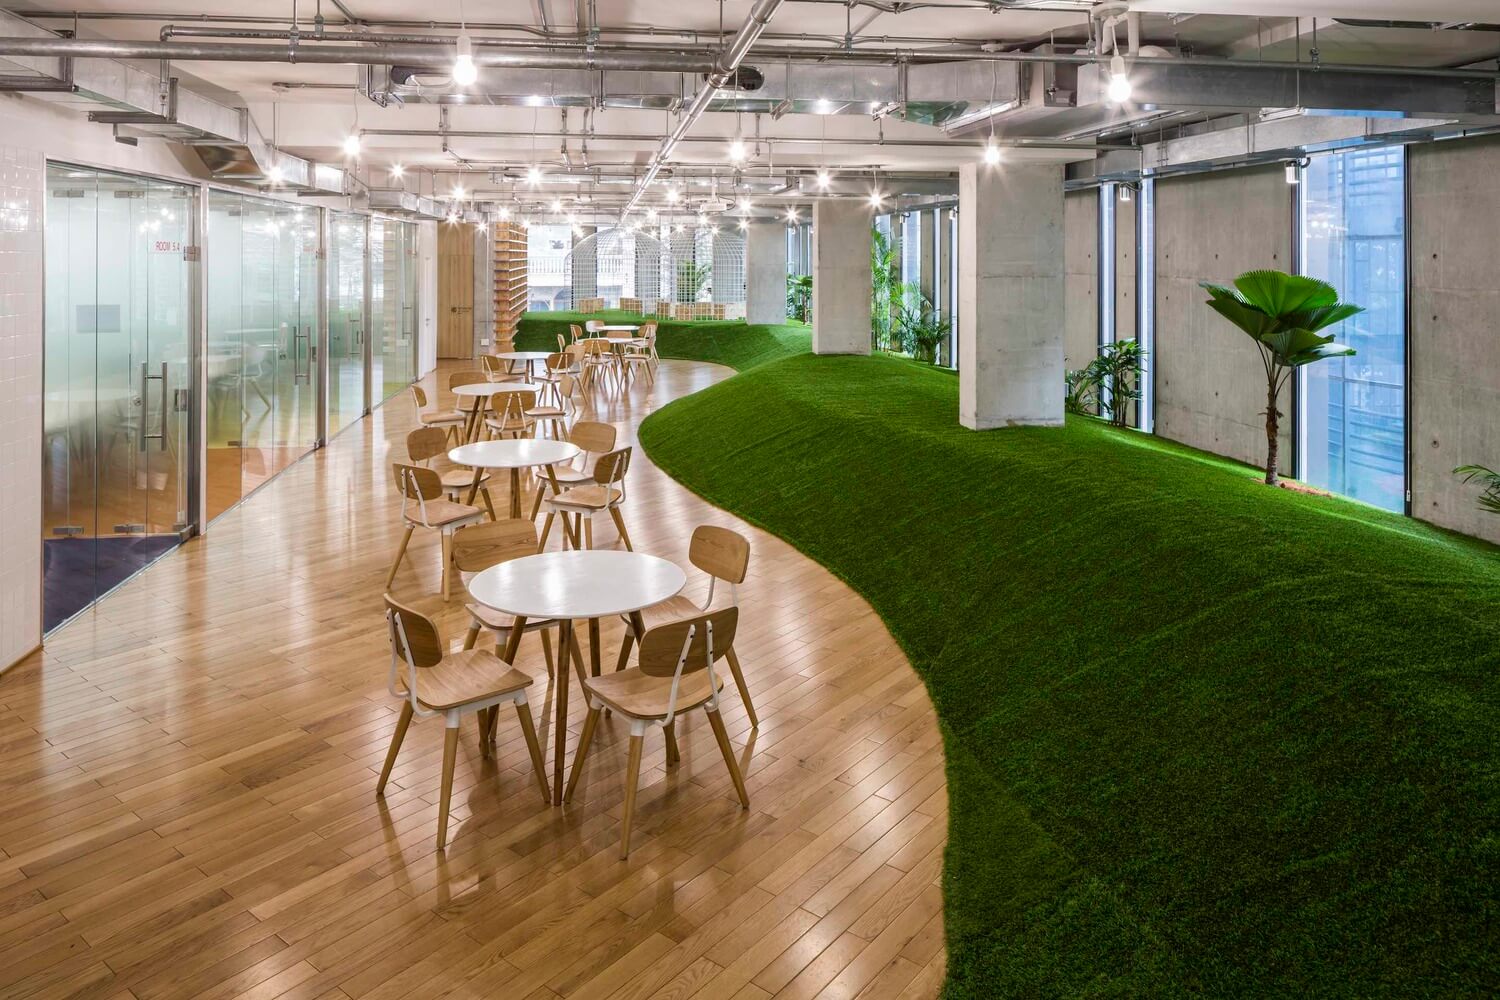 Văn phòng xanh đem lại không gian thoáng mát, tươi mới cho không gian làm việc